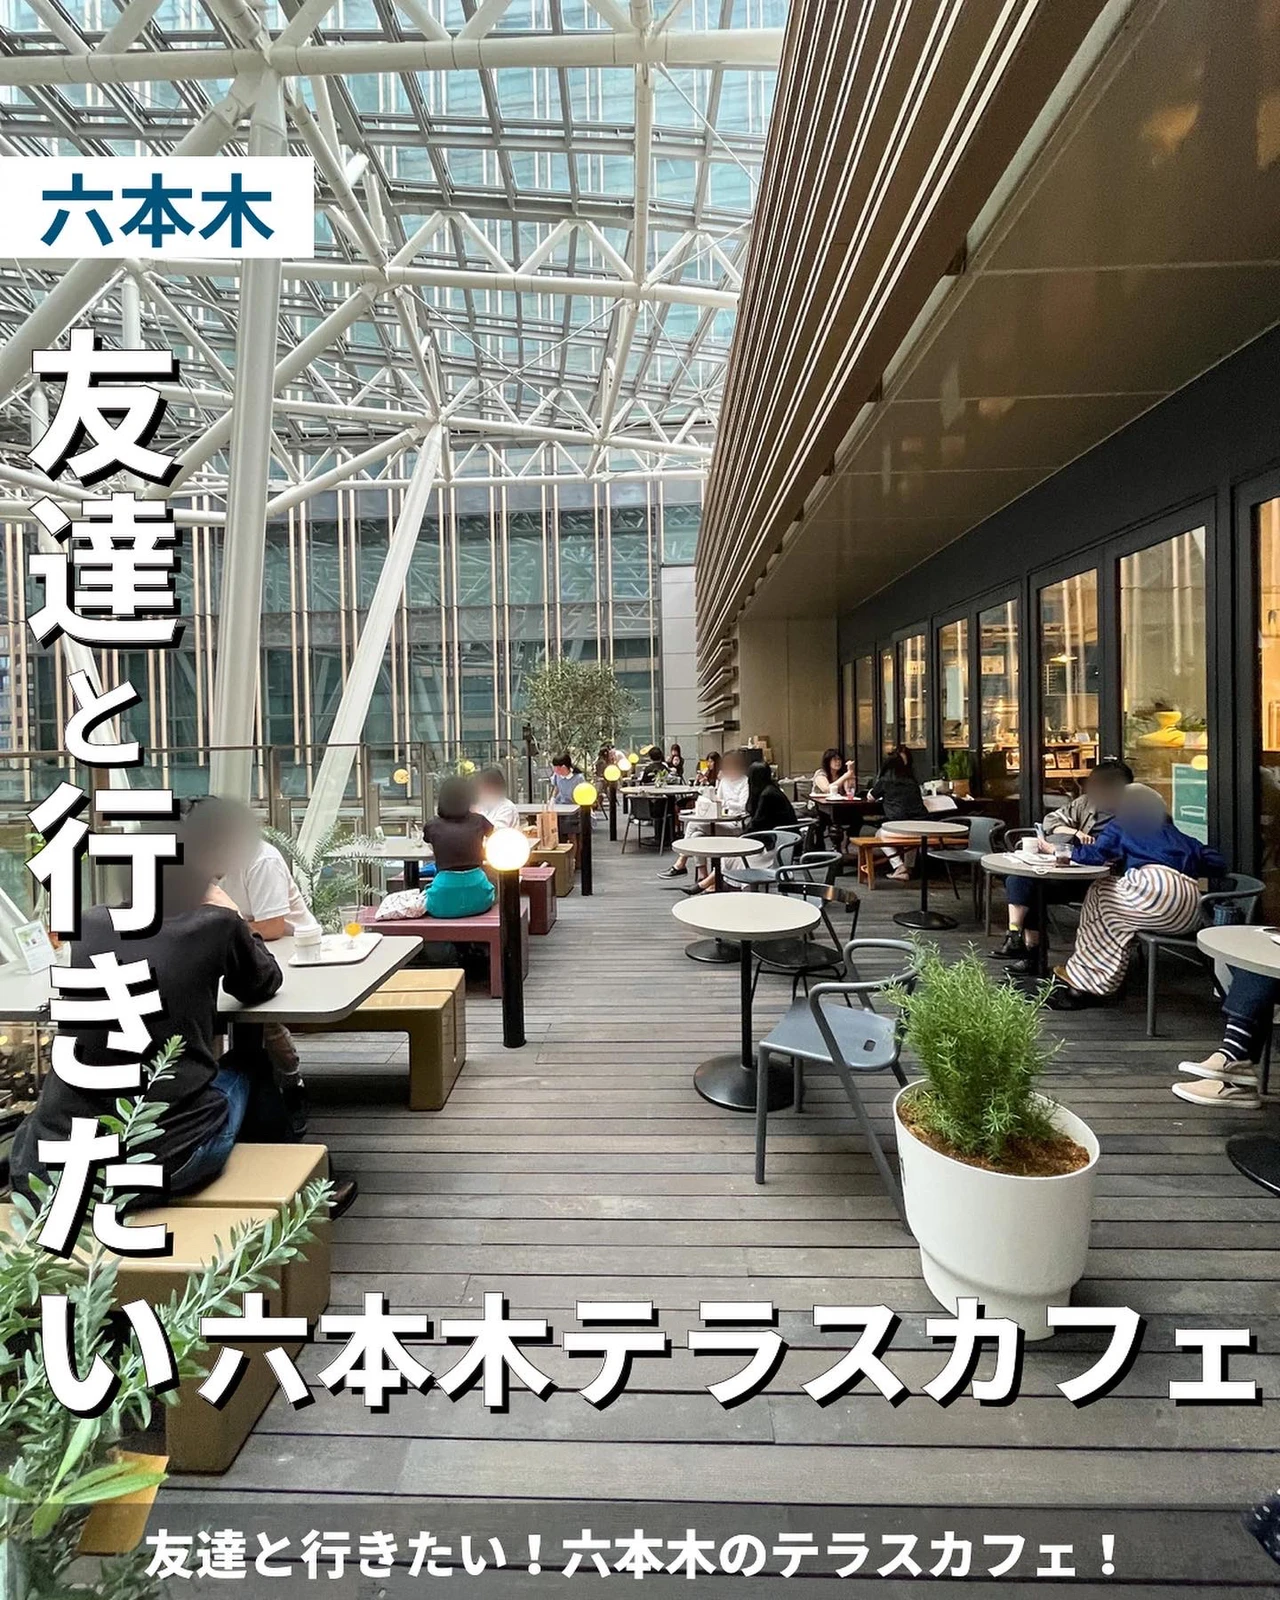 友達と行きたい 六本木のテラスカフェ ゆき カフェ巡り 東京 神奈川が投稿したフォトブック Lemon8